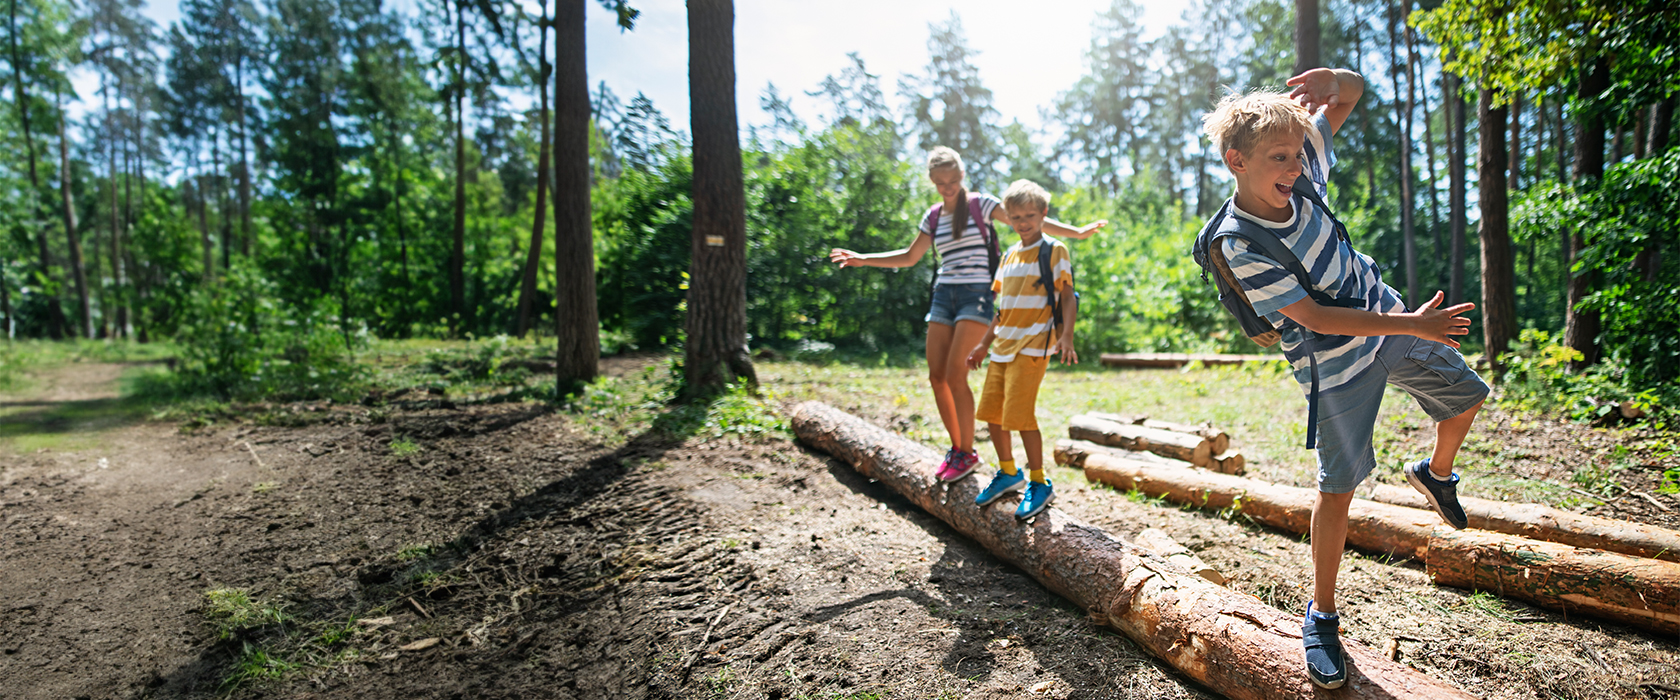 Drei Kinder balancieren im Wald auf einem umgefallenen Baumstamm